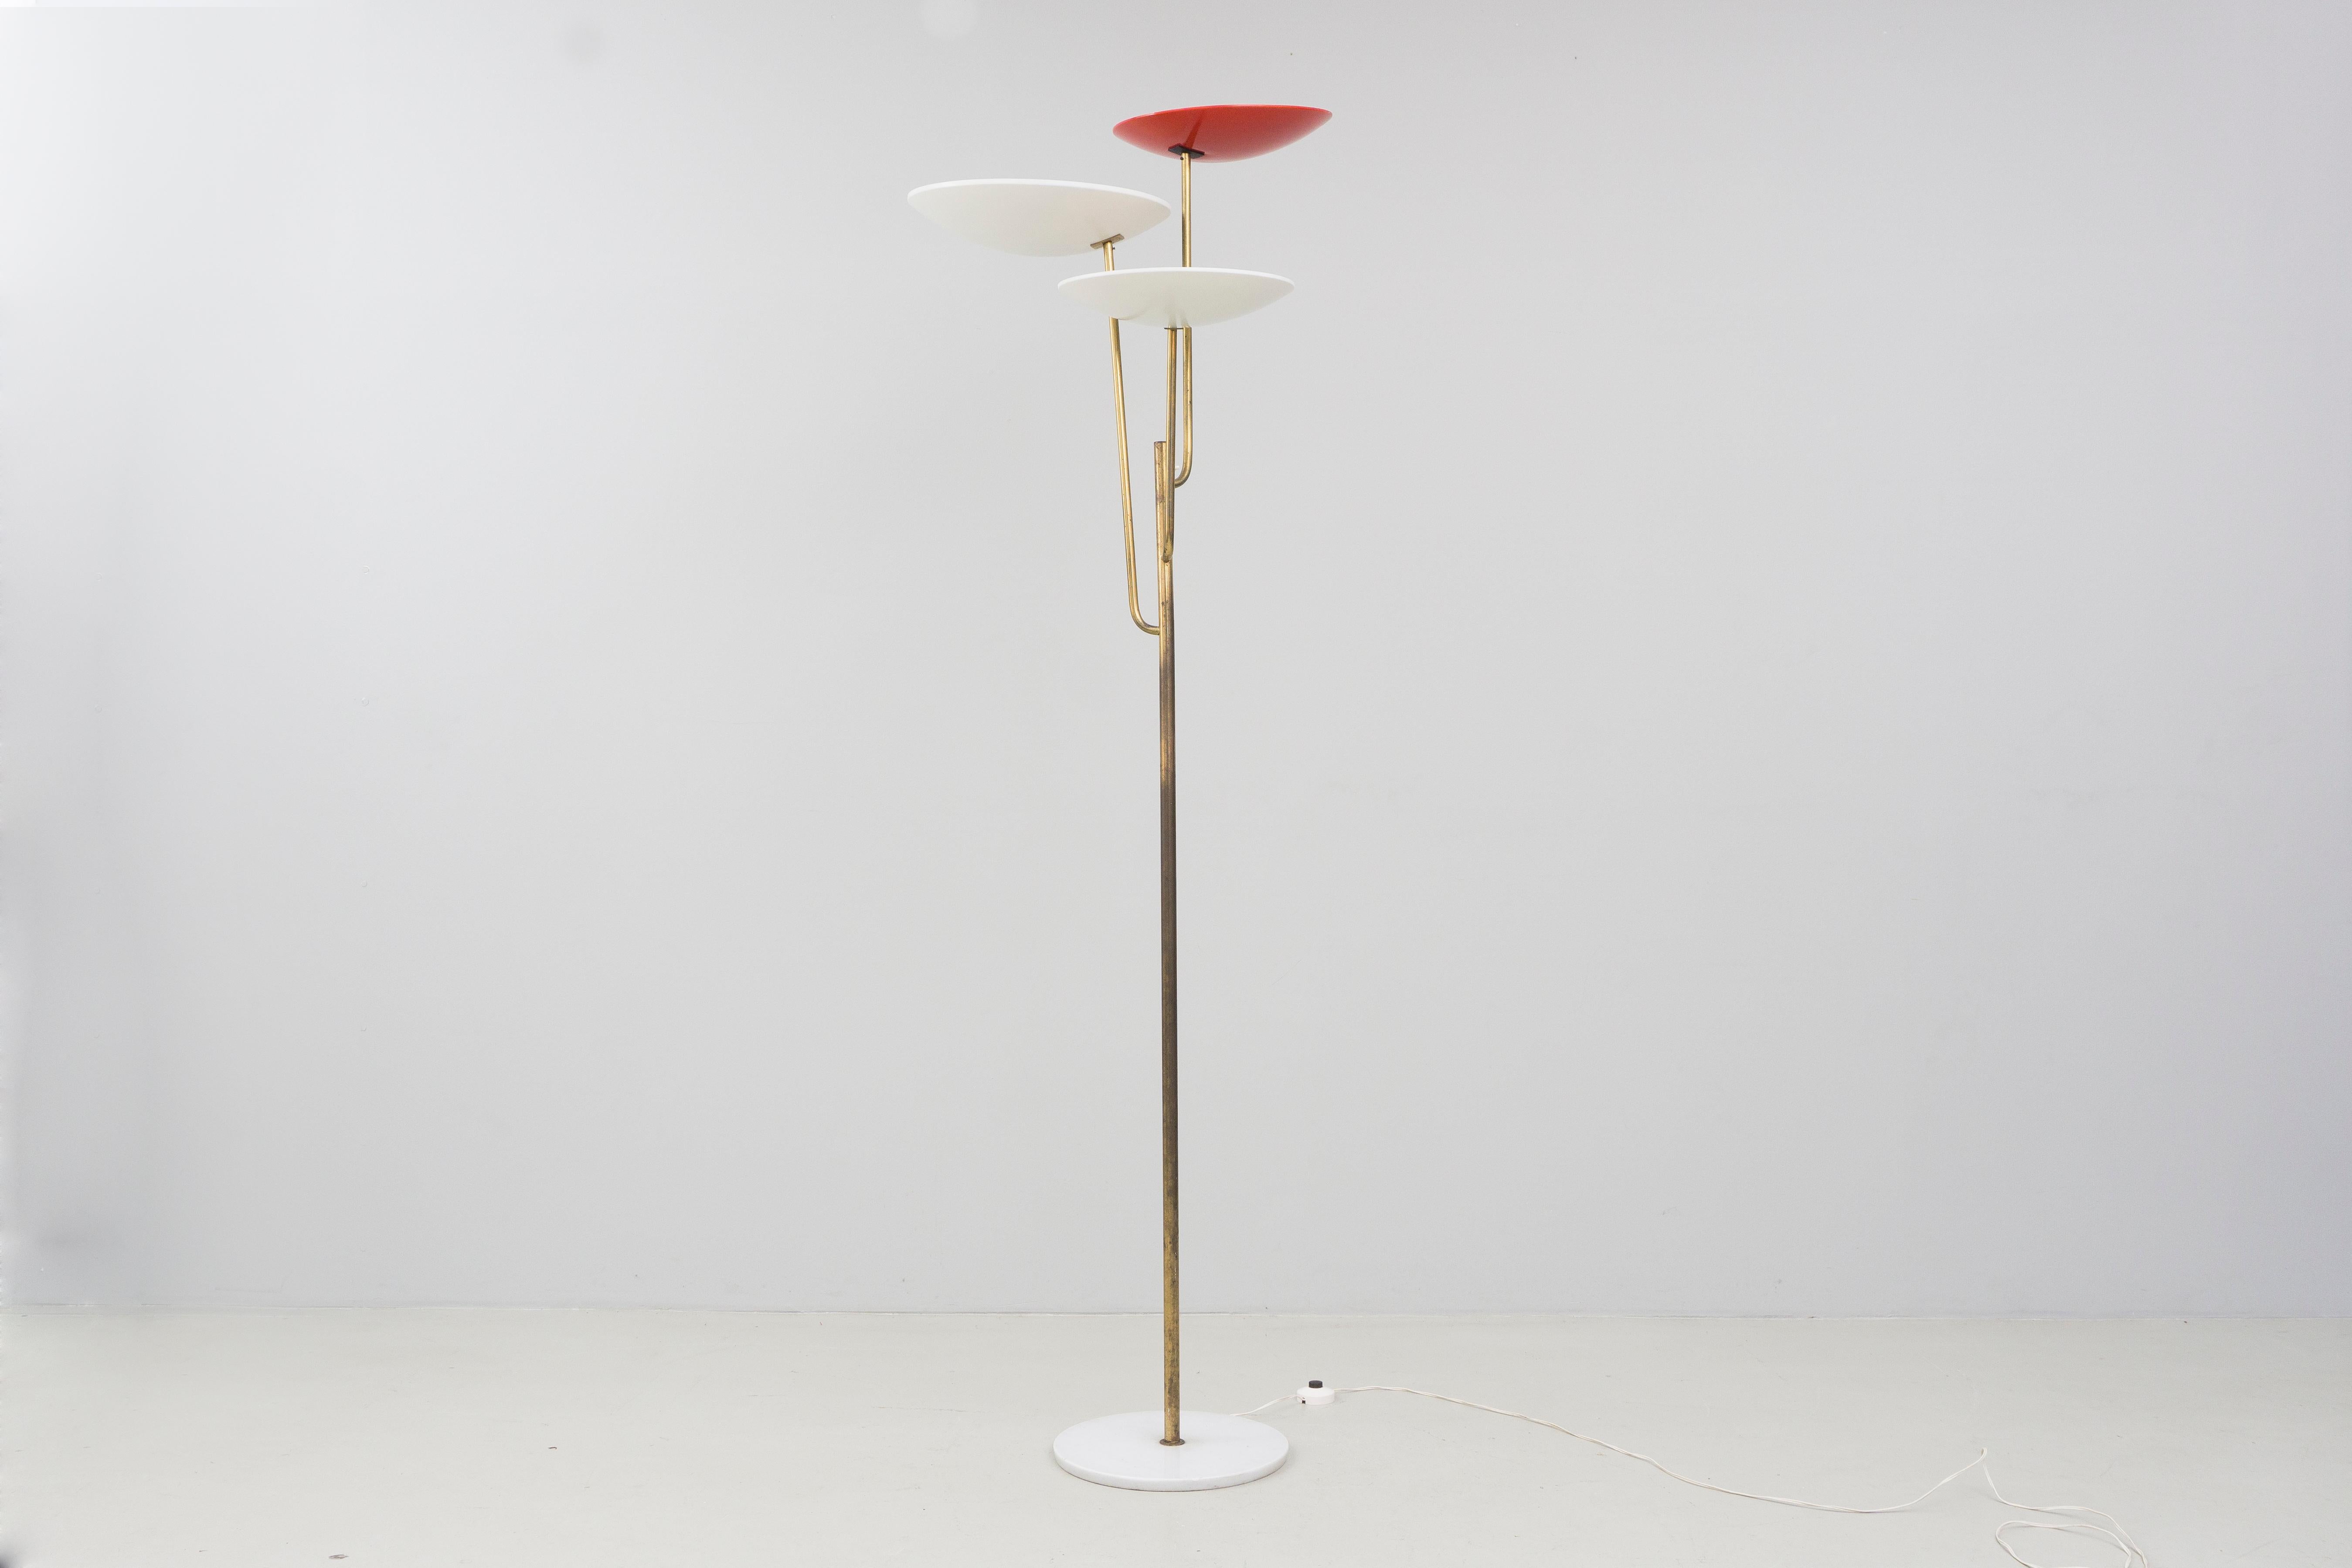 Élégant lampadaire en laiton créé par Bruno Gatta et produit par Stilnovo, Italie, en 1953.
La lampe a trois réflecteurs et un pied de lampe en marbre. Le logo du fabricant est visible à l'intérieur de l'abat-jour.

Cette lampe est